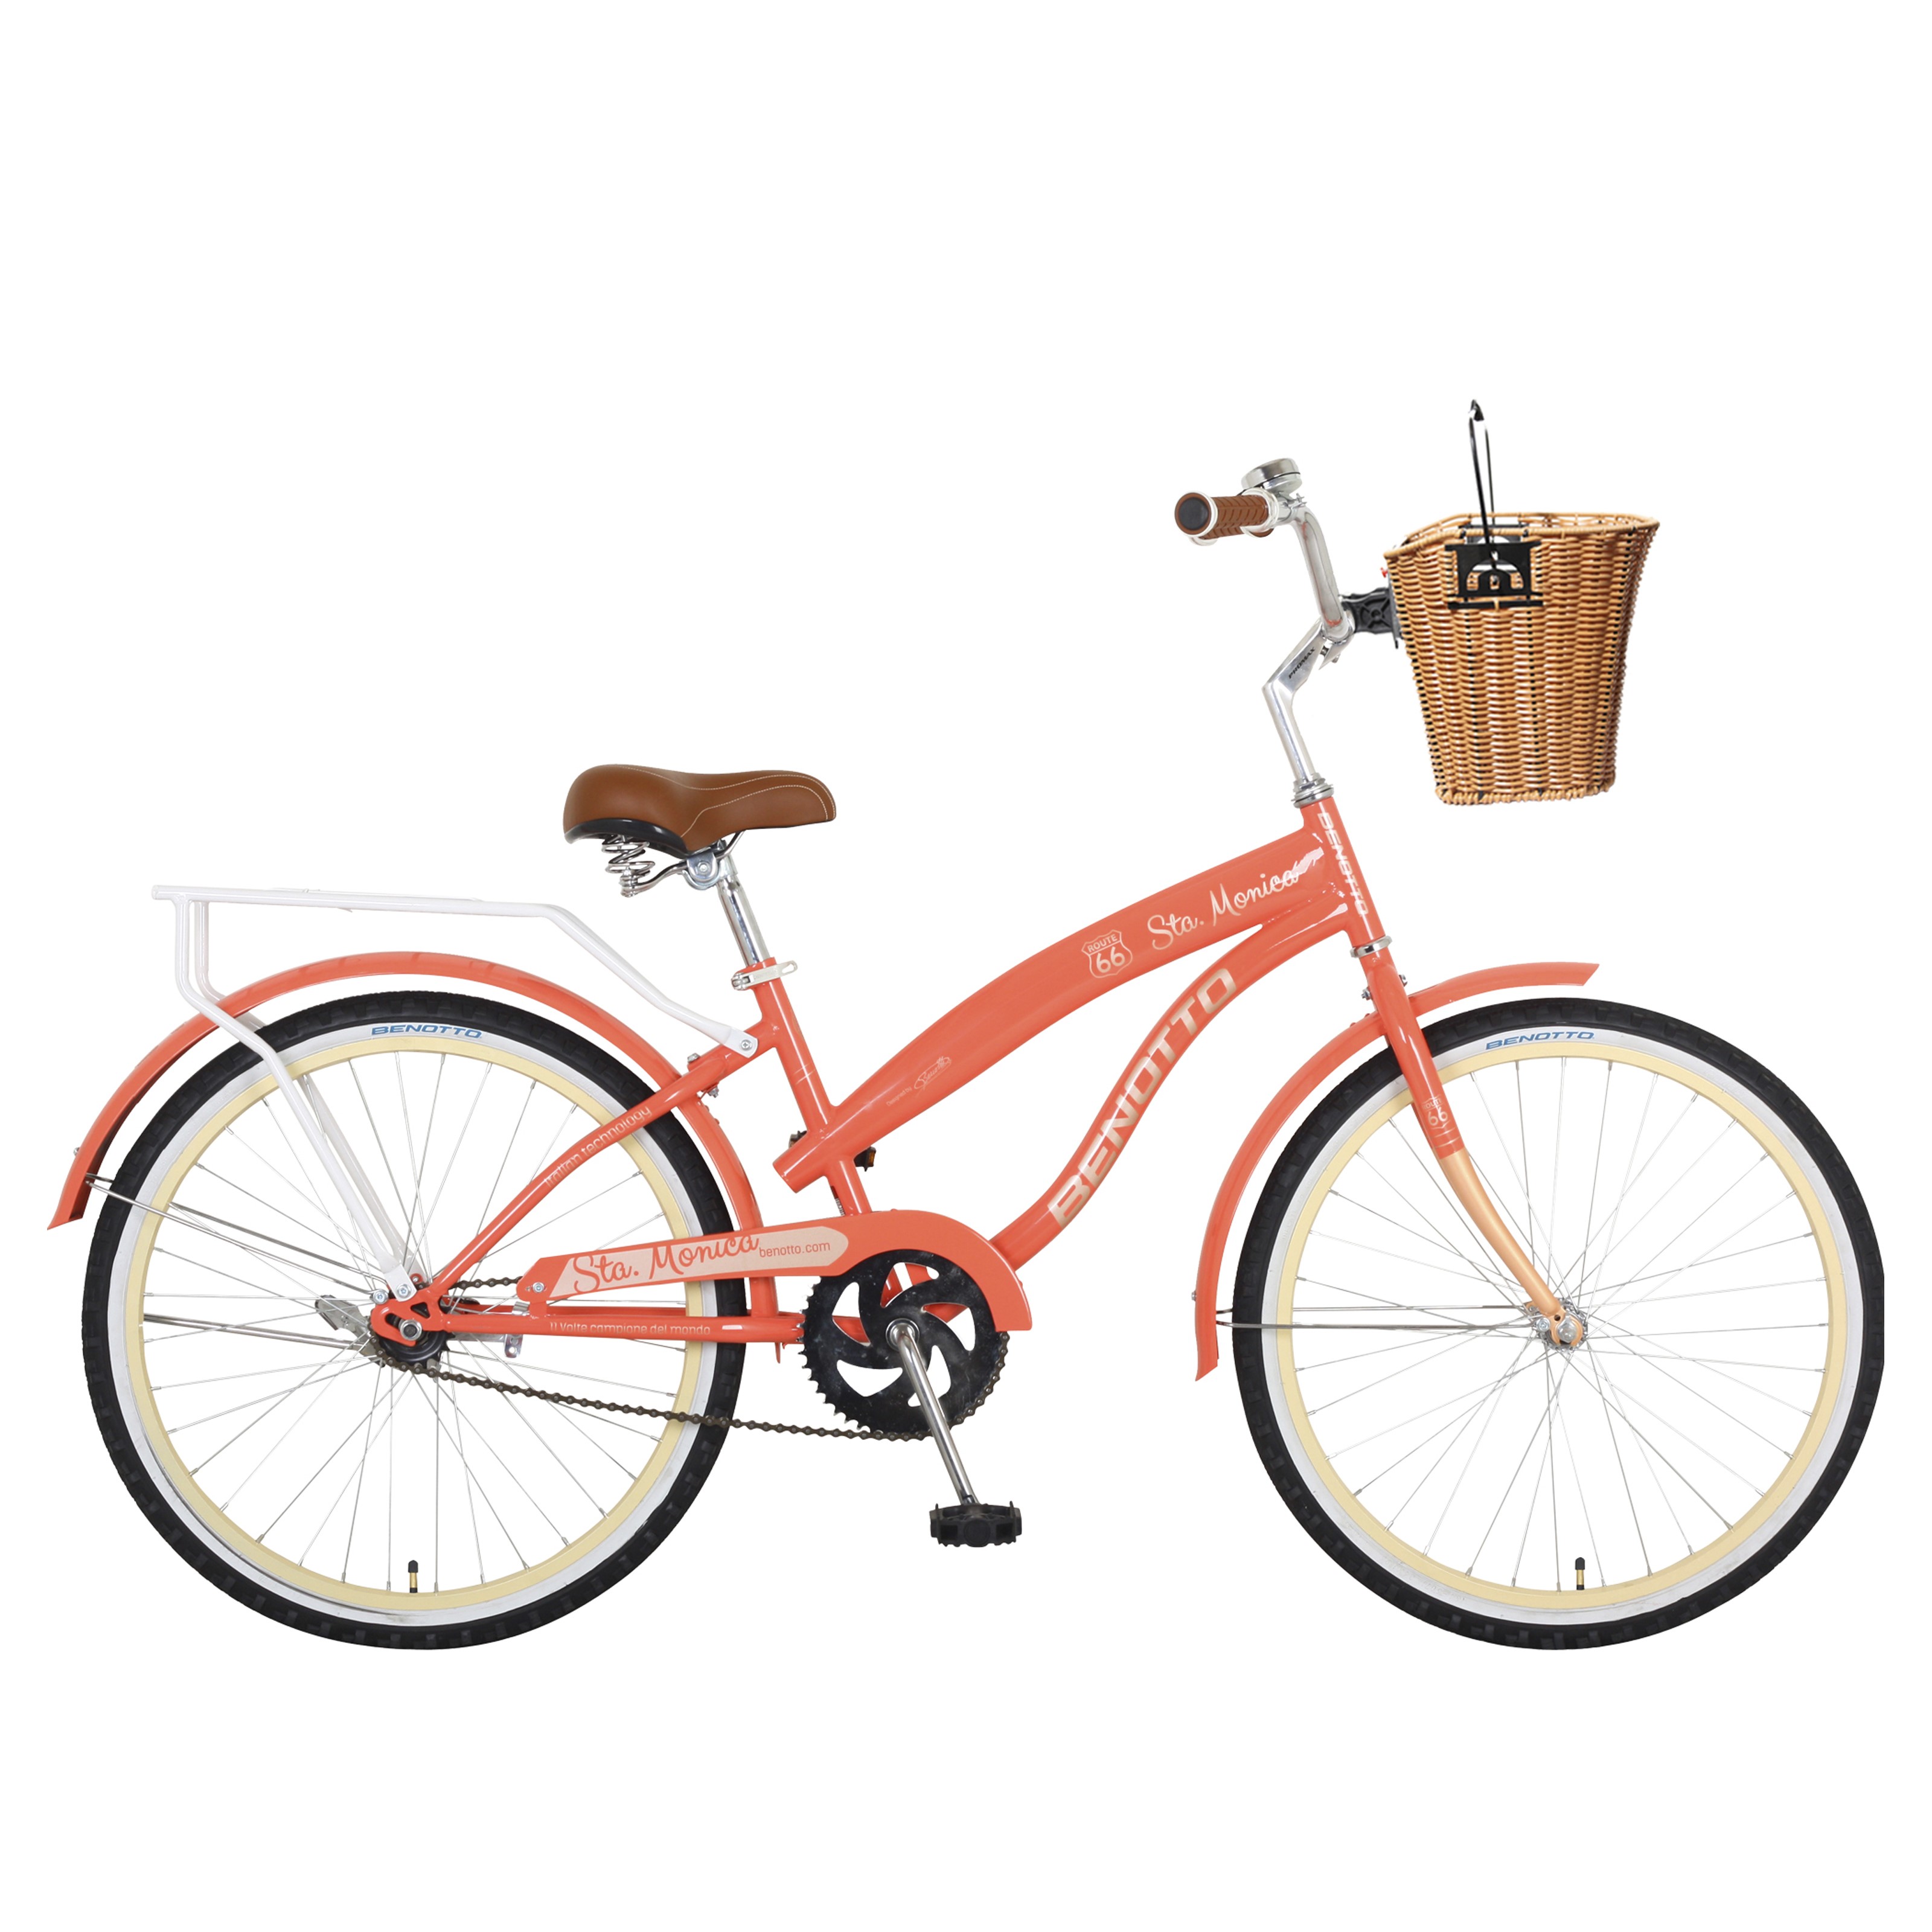 Bicicleta BENOTTO City STA. MONICA R24 1V. Mujer Frenos Contrapedal con Canastilla Acero Naranja/Crema Talla:UN